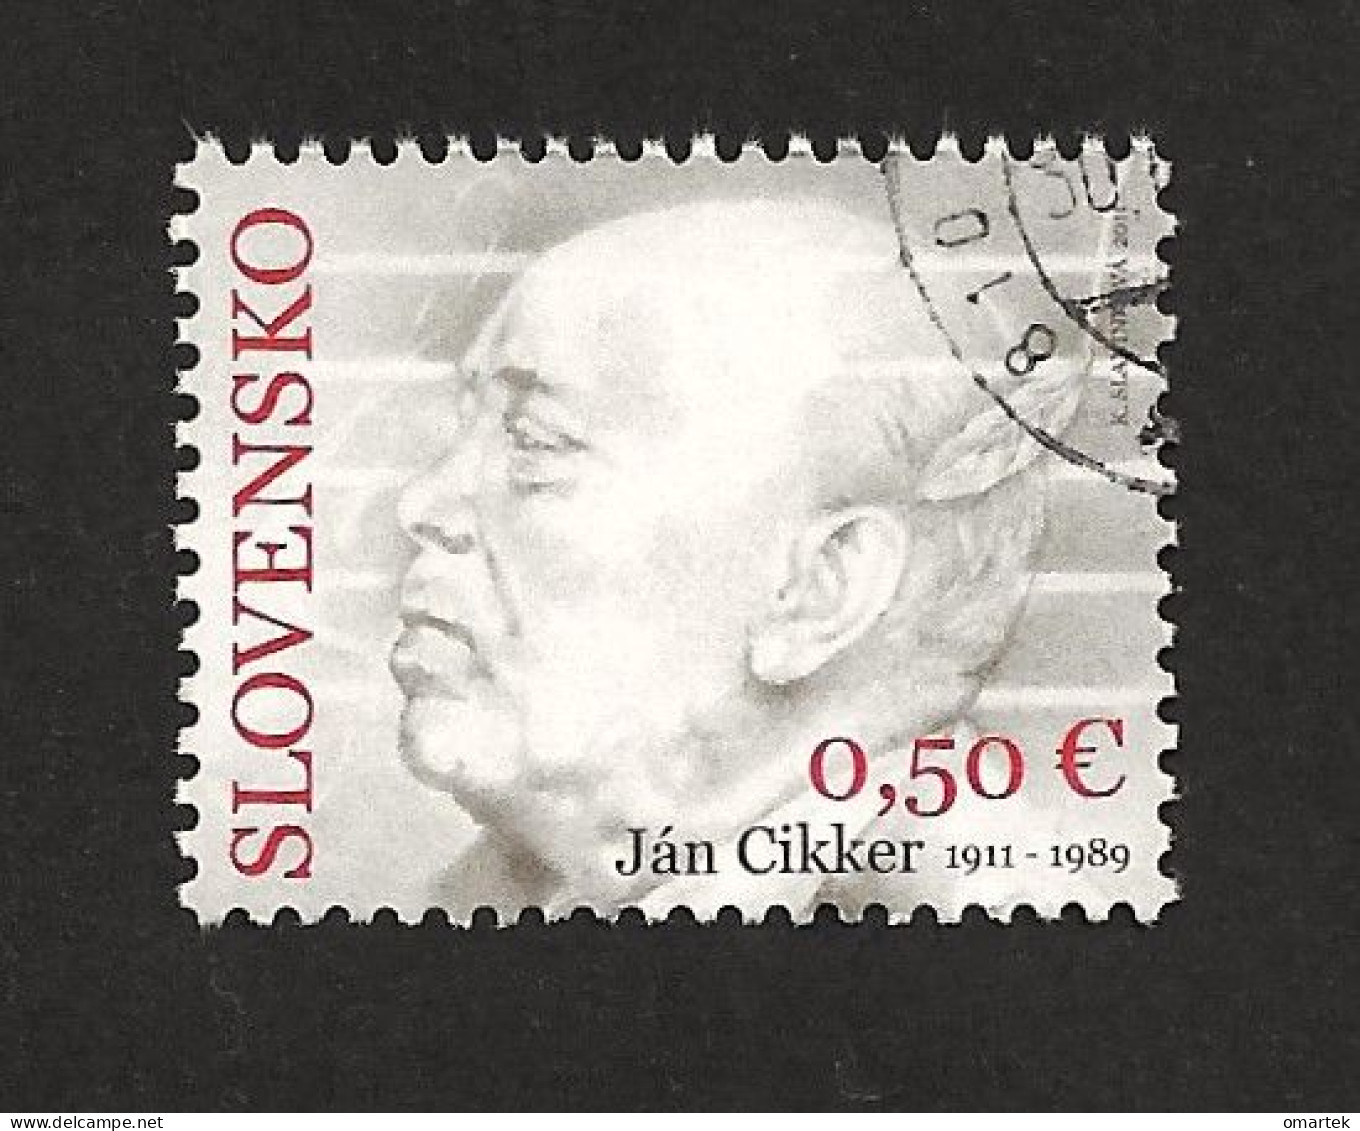 Slovakia Slowakei 2011 ⊙ Mi 666 Sc 622 Yv 582 Ján Cikker (1911 - 1989). C2 - Used Stamps